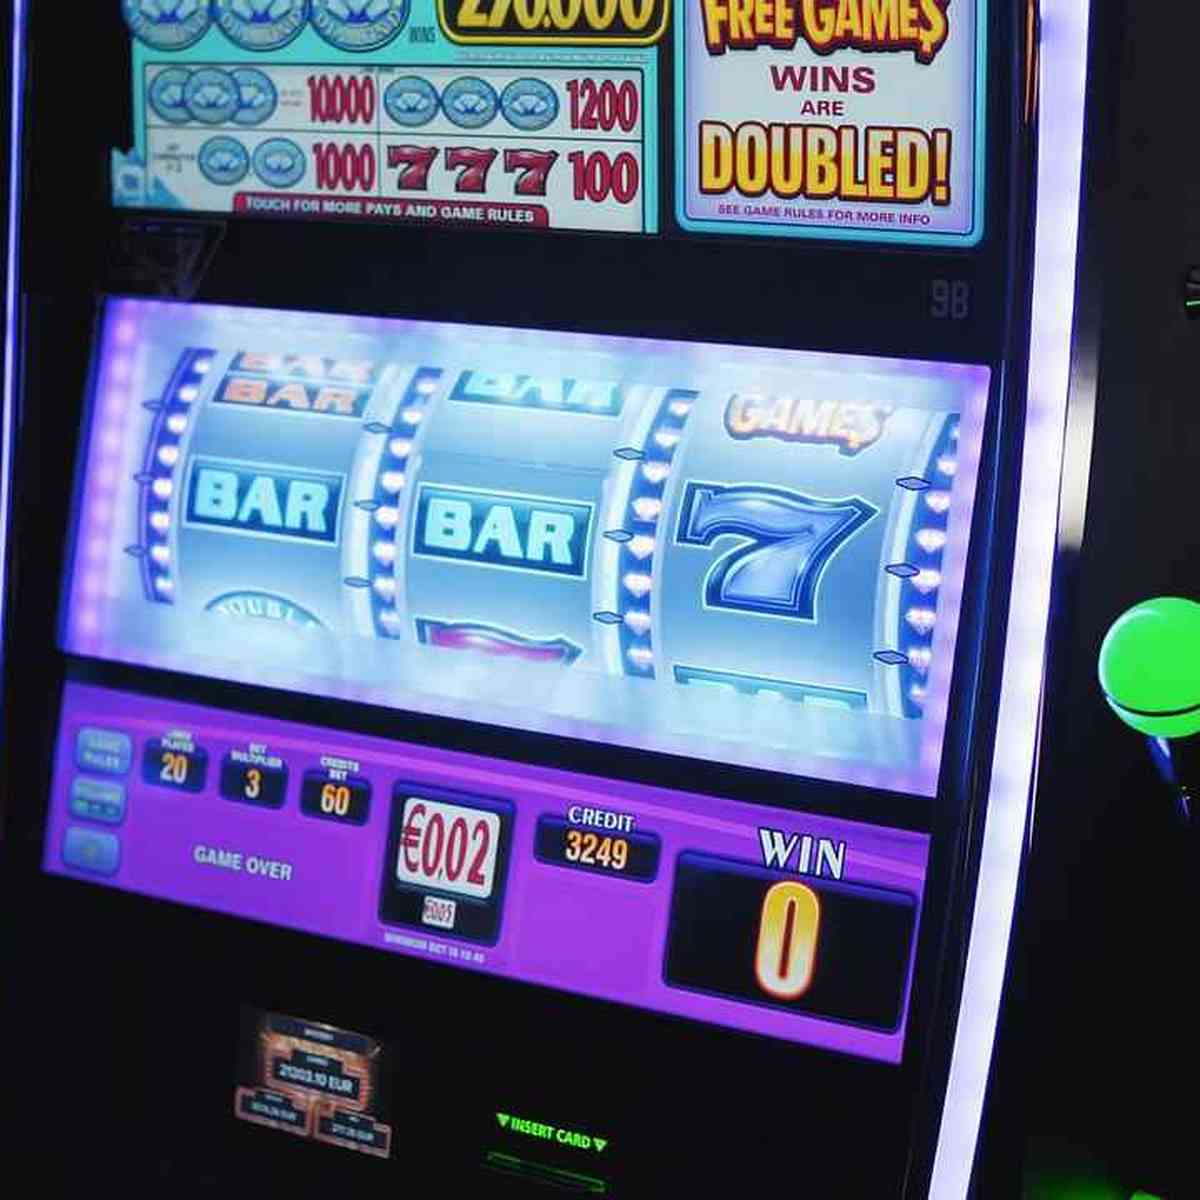 Slot Machines - Mais de 1000 slots à escolha - Jogue grátis